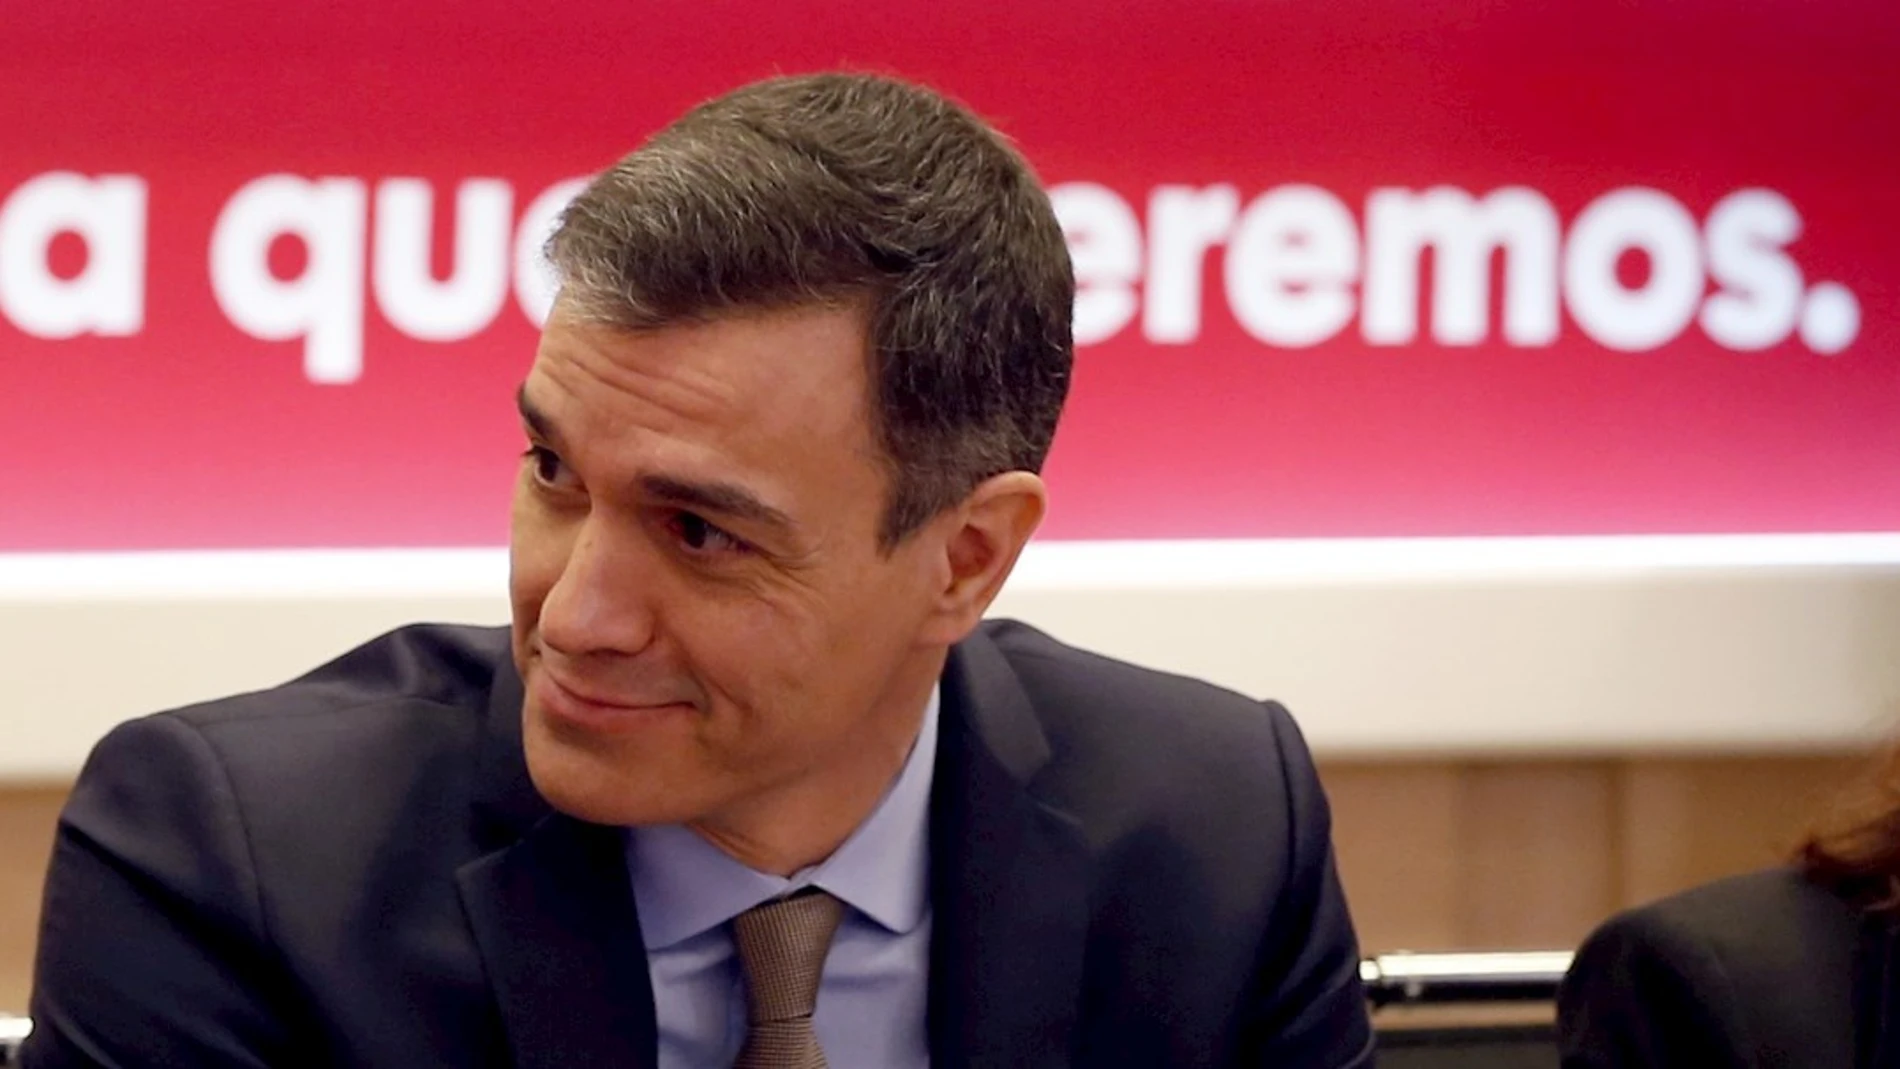 El PSOE convoca a sus barones para decidir una postura única en torno a la financiación autonómica